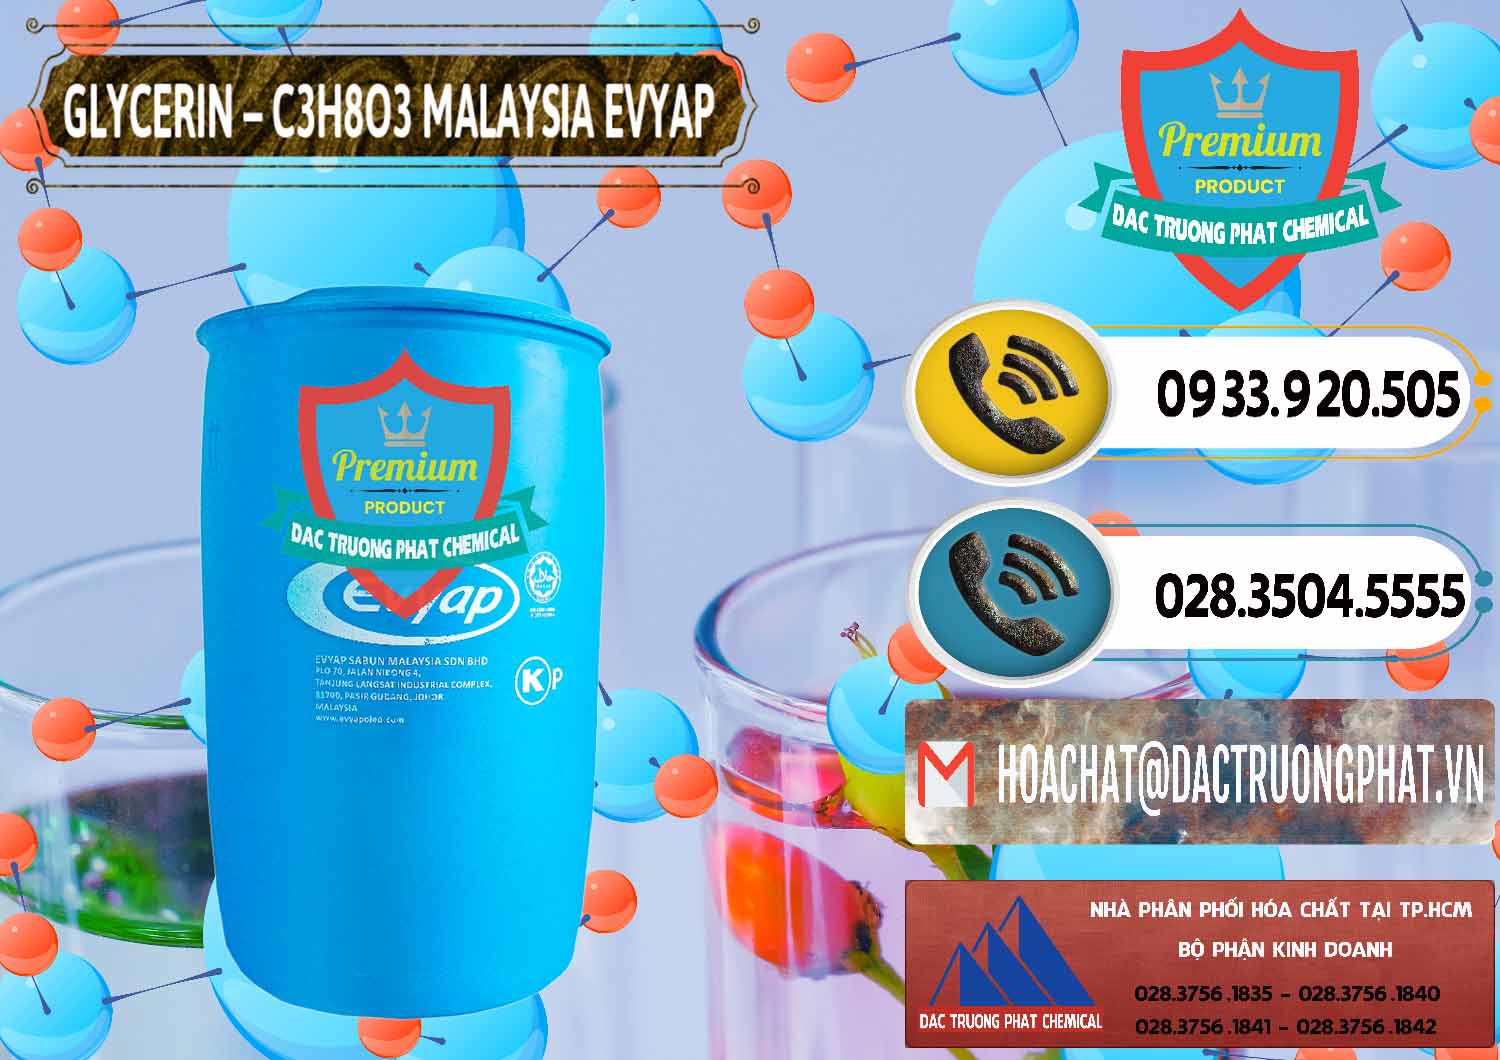 Đơn vị nhập khẩu ( bán ) Glycerin – C3H8O3 Malaysia Evyap - 0066 - Cung cấp & phân phối hóa chất tại TP.HCM - hoachatdetnhuom.vn